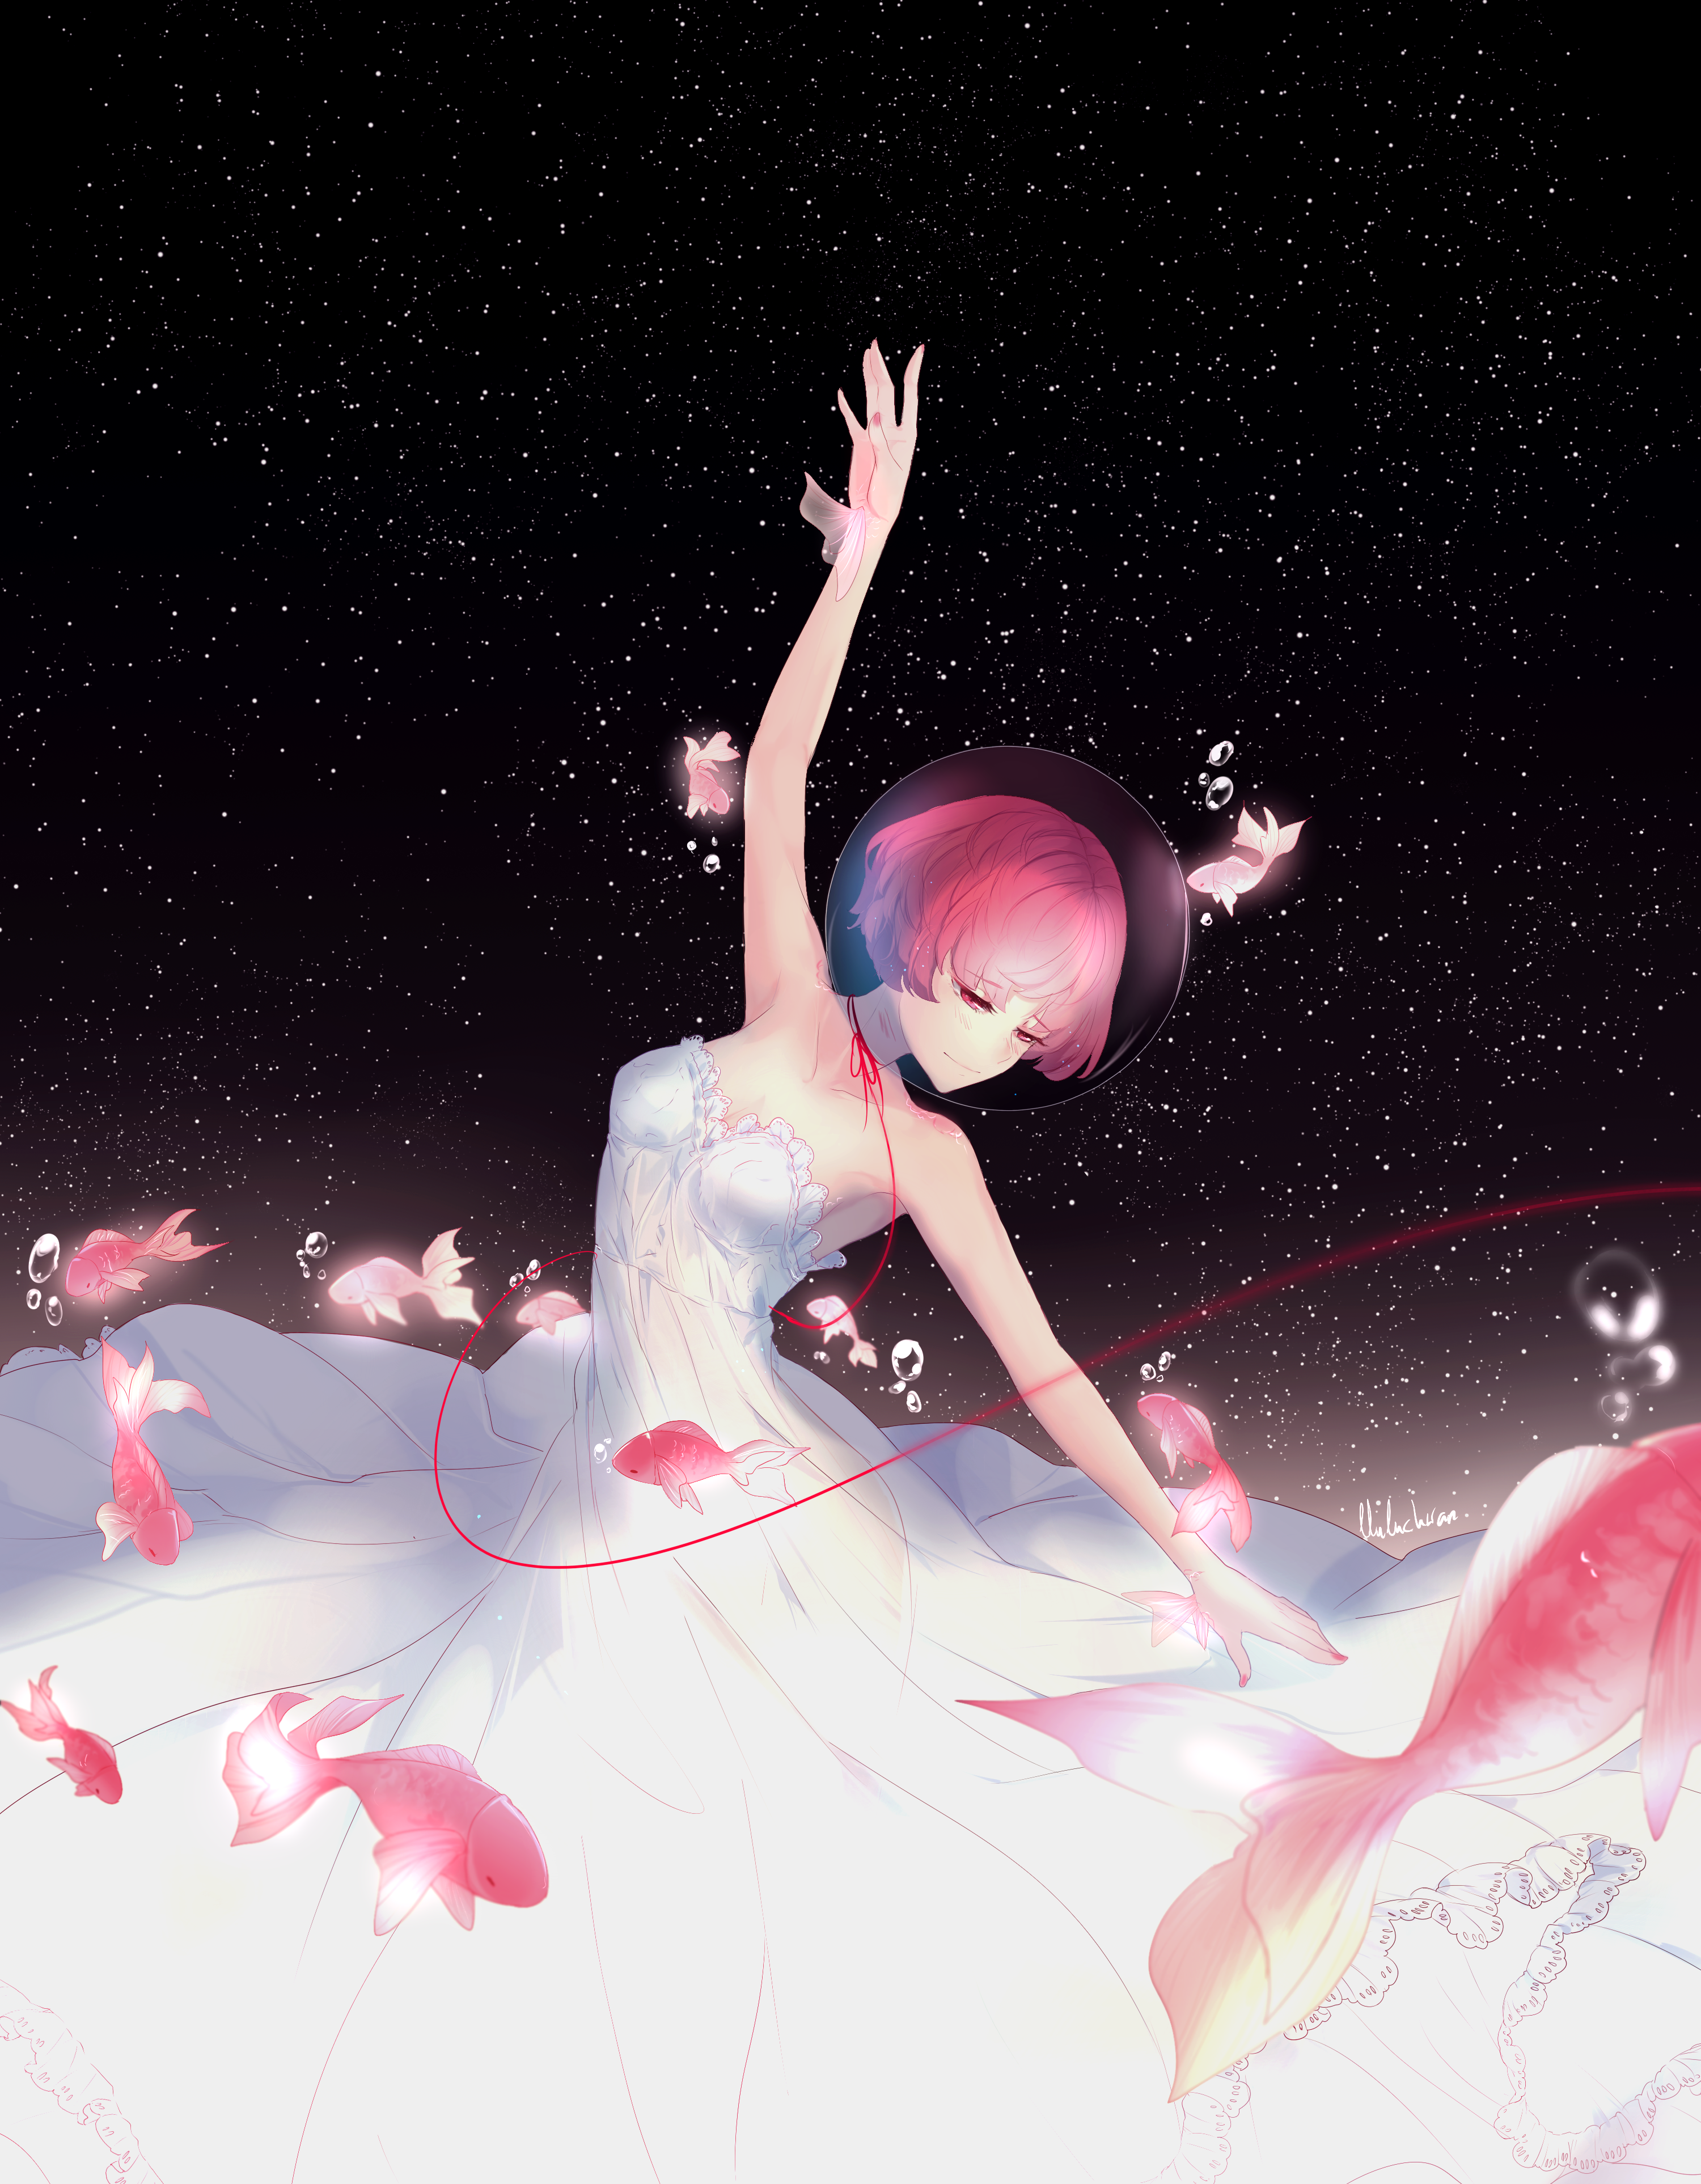 Anime Girl Ballet Dancer - HD Wallpaper 